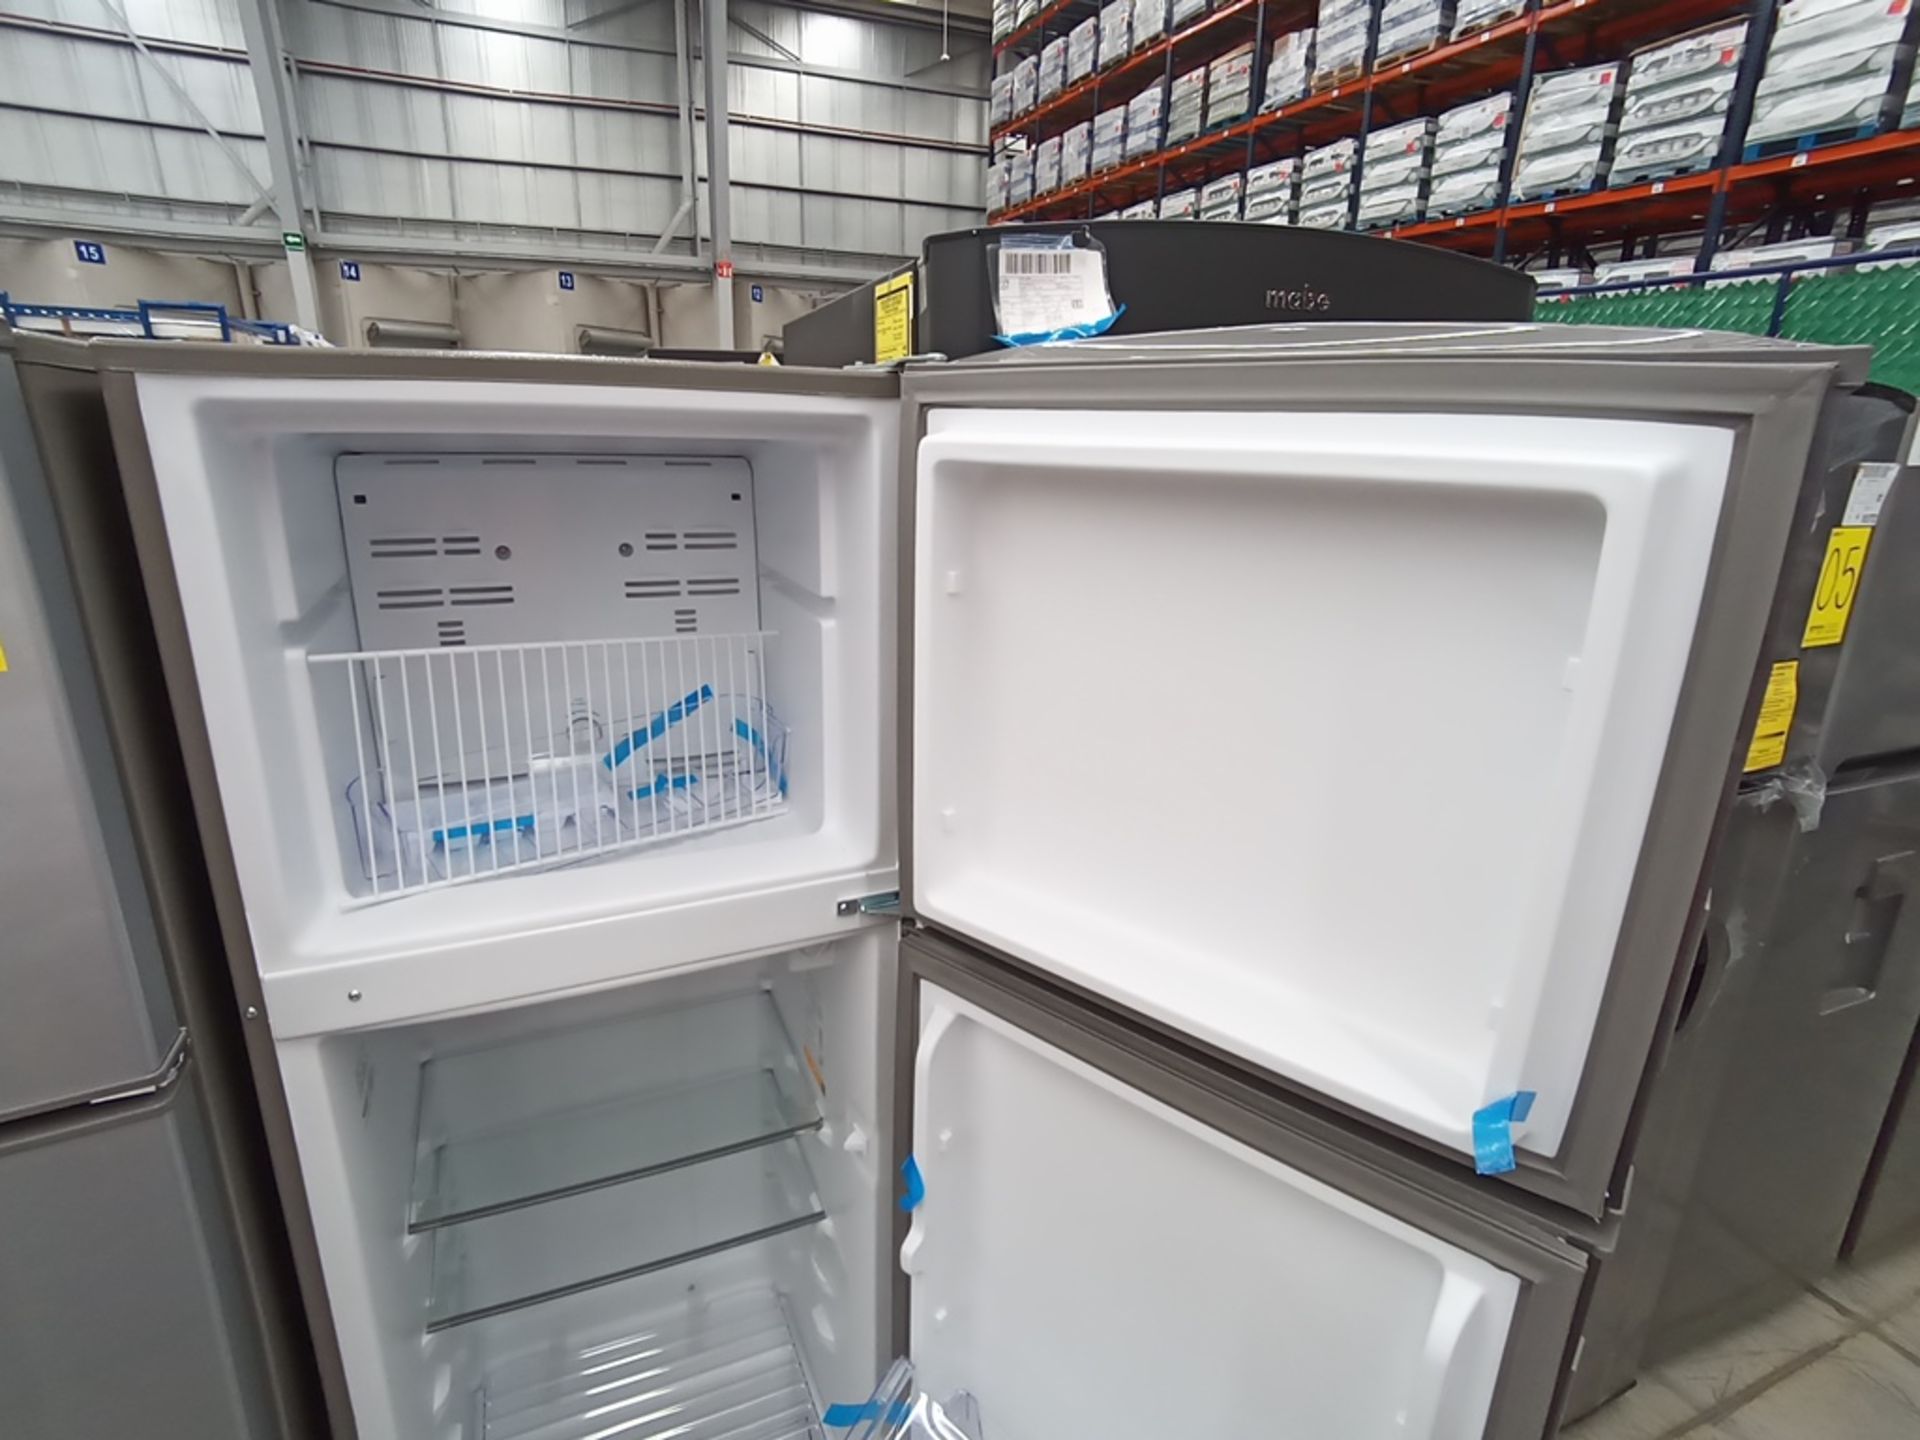 1 Refrigerador Marca Acros, Modelo AT091FG, Serie VRA3383587, Color Gris con Estampado. Golpeado. F - Image 24 of 30